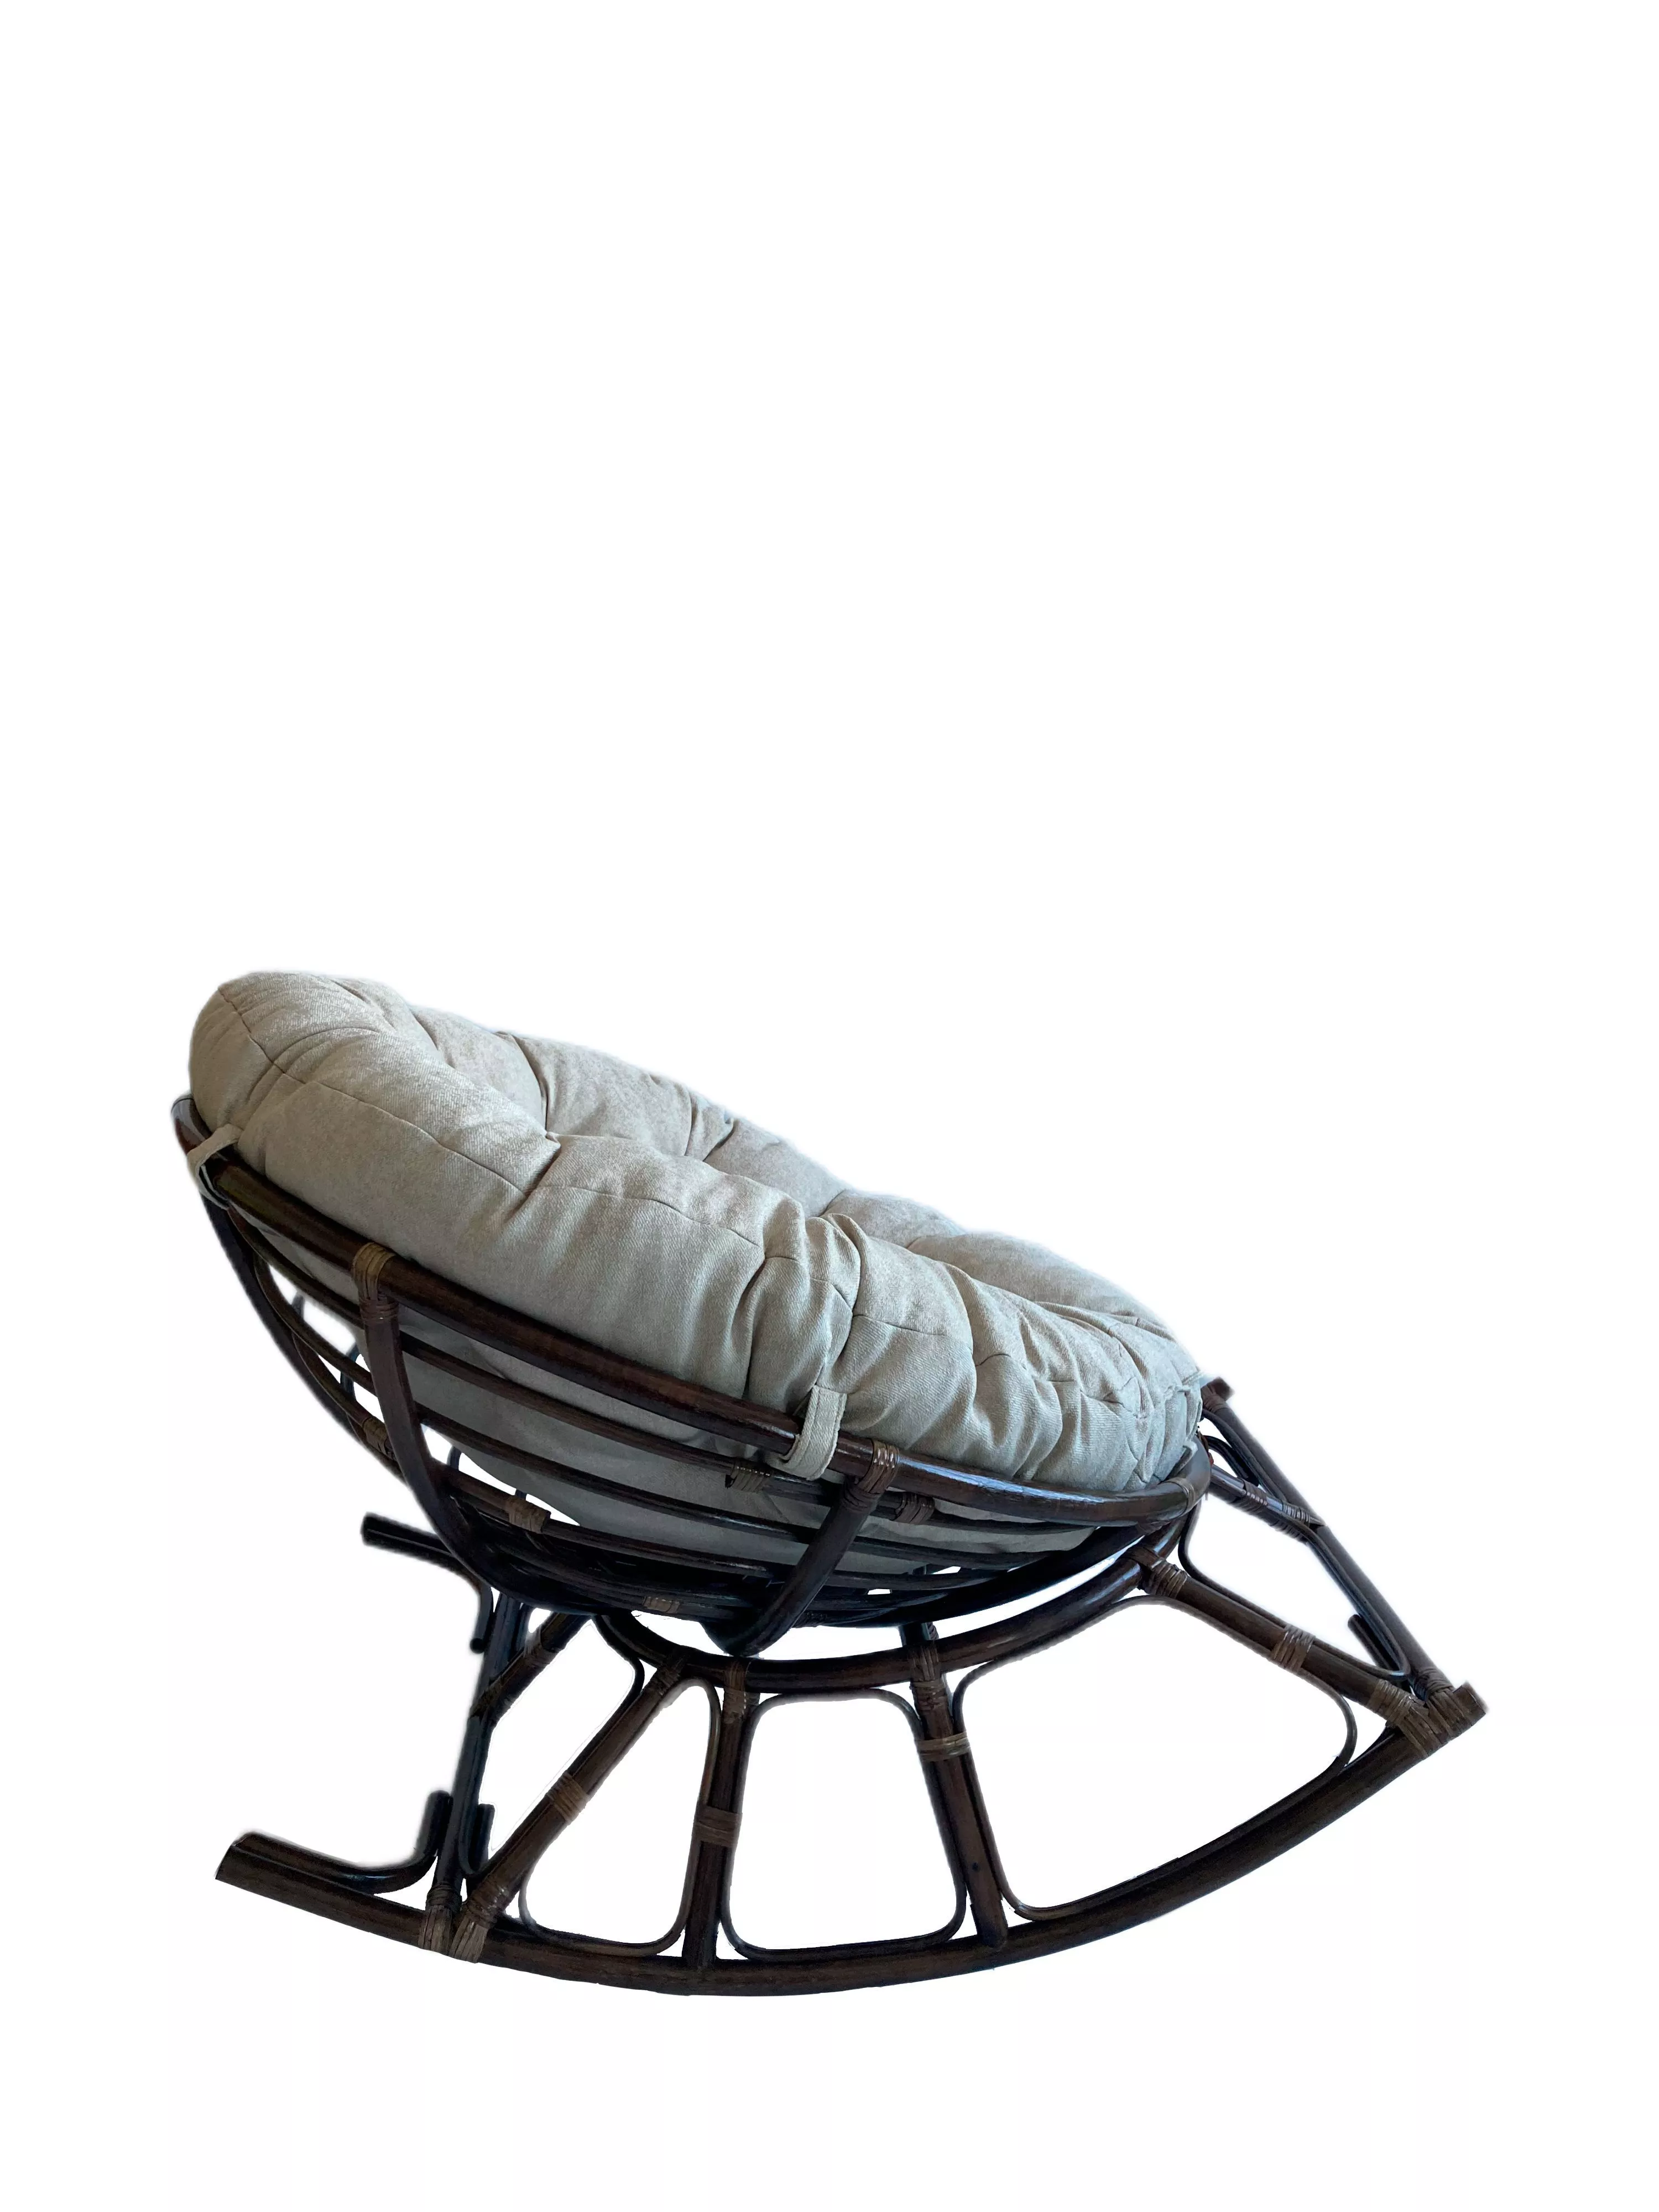 Кресло-качалка из ротанга Папасан 23 01D темно-коричневый